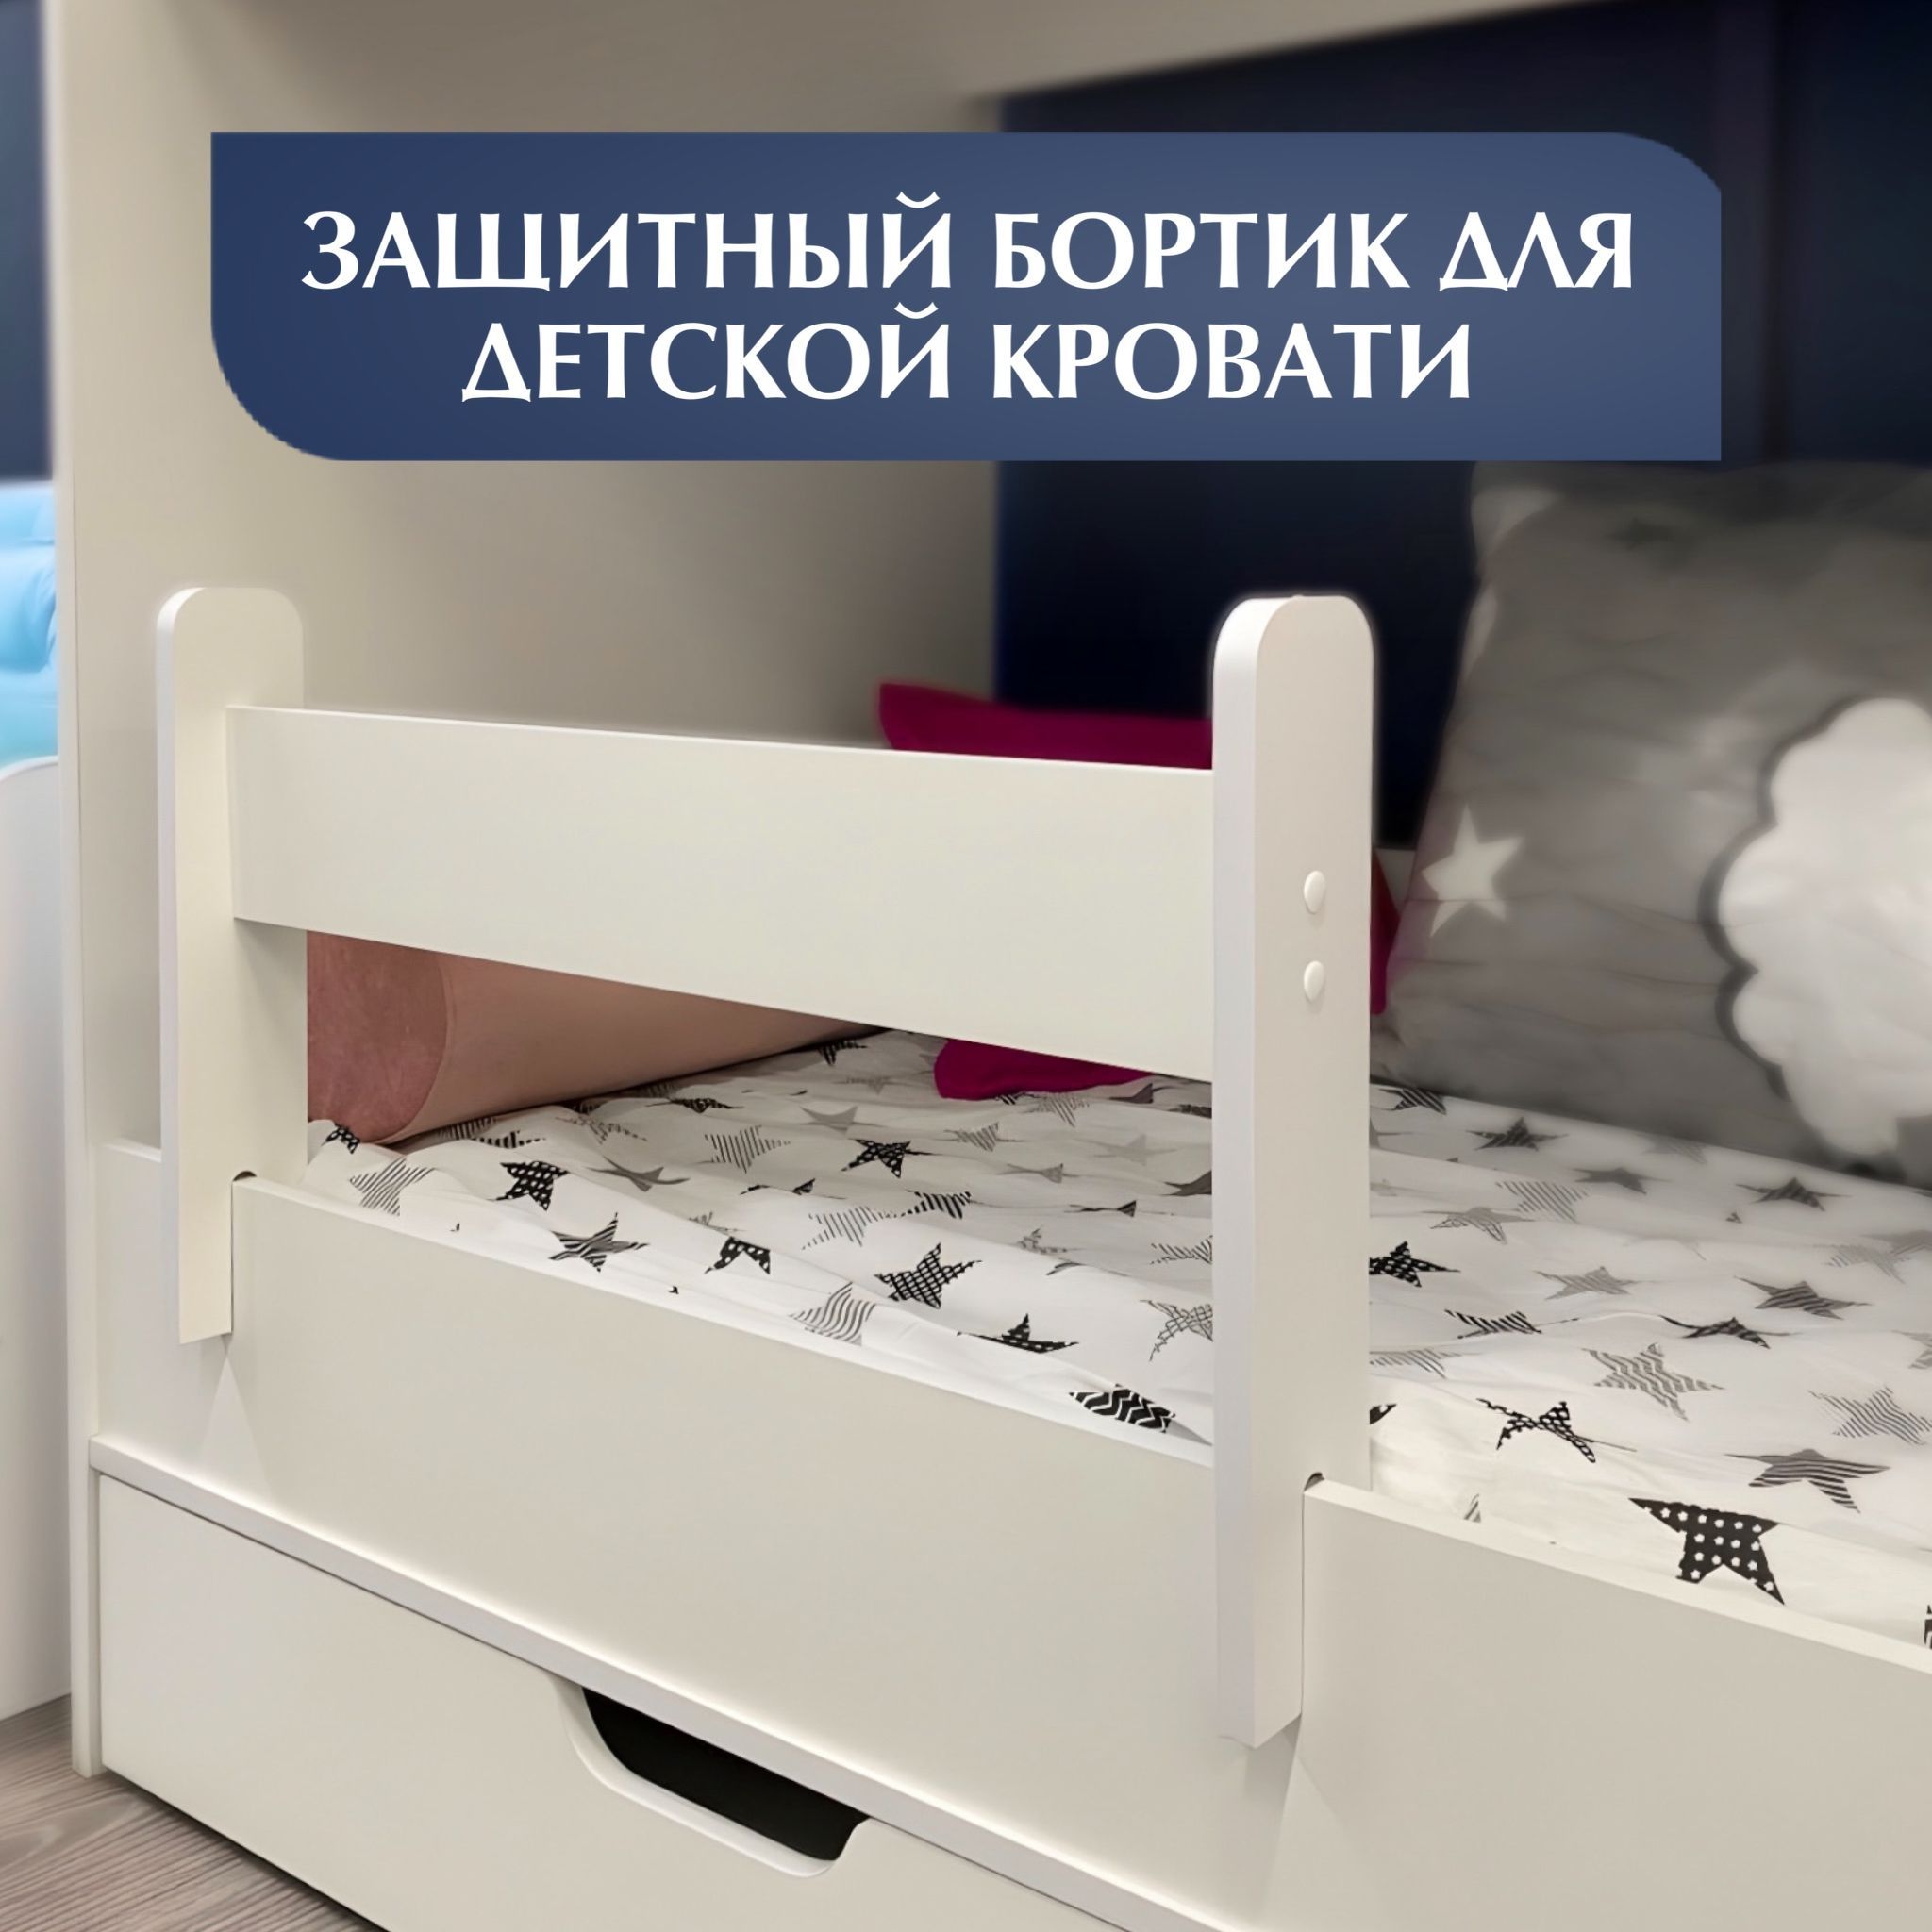 Как сделать защиту, чтобы ребенок не упал с кровати? Советы. Как и где купить бортики :: steklorez69.ru